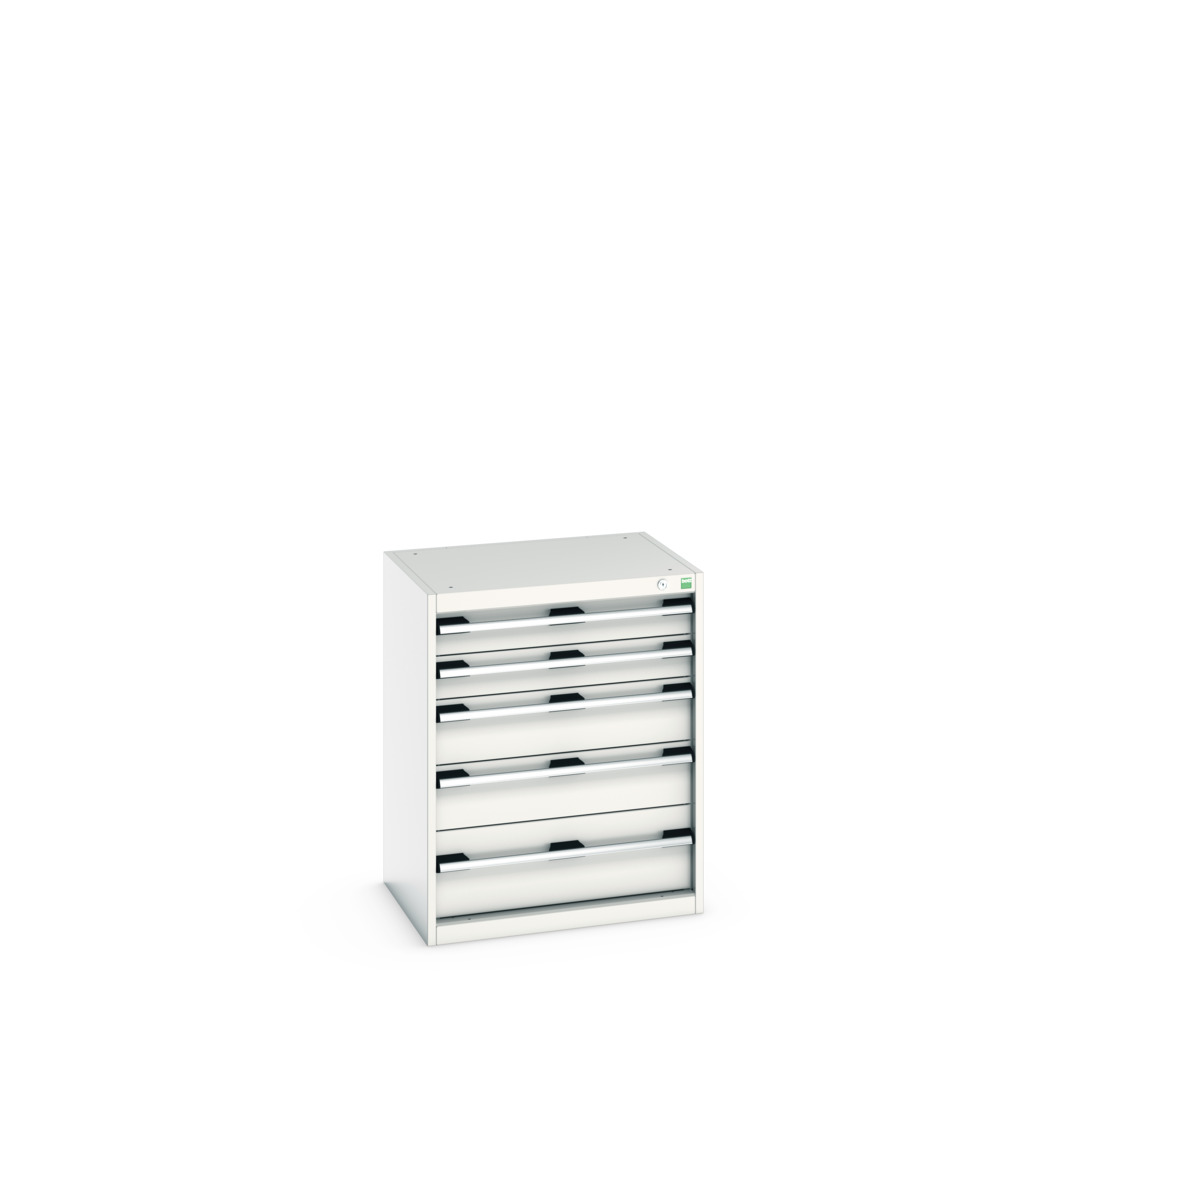 40011046.16V - cubio drawer cabinet